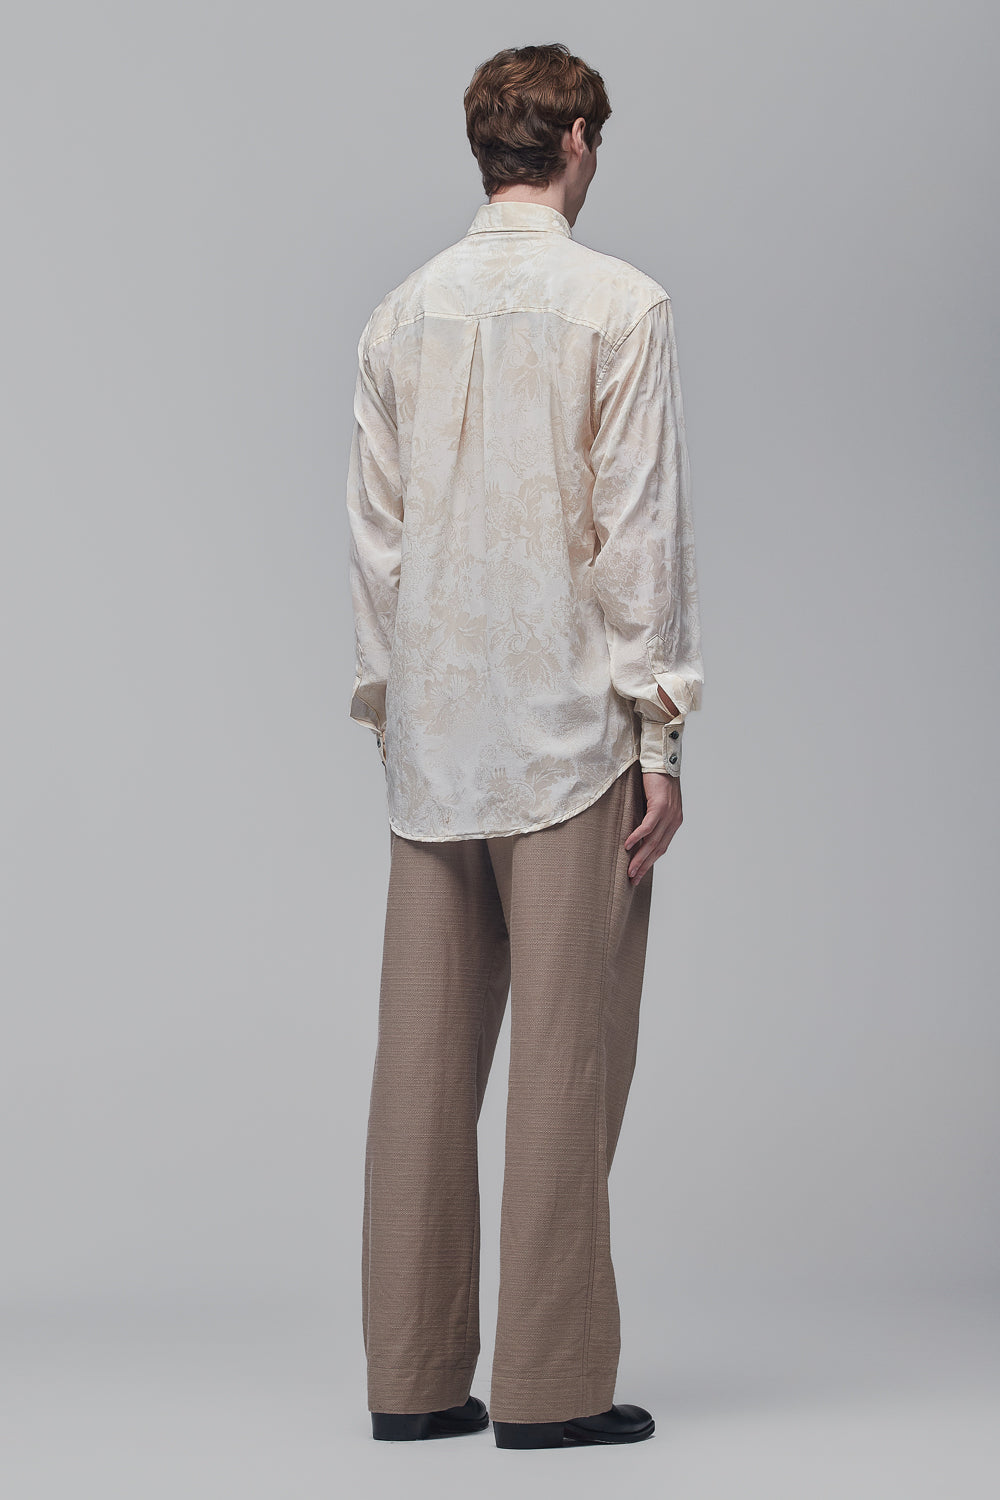 Camisa de Mangas Longas em Crepe de Seda Off-White com Estampa em Relevo de Flores Amarelo-Nápoles